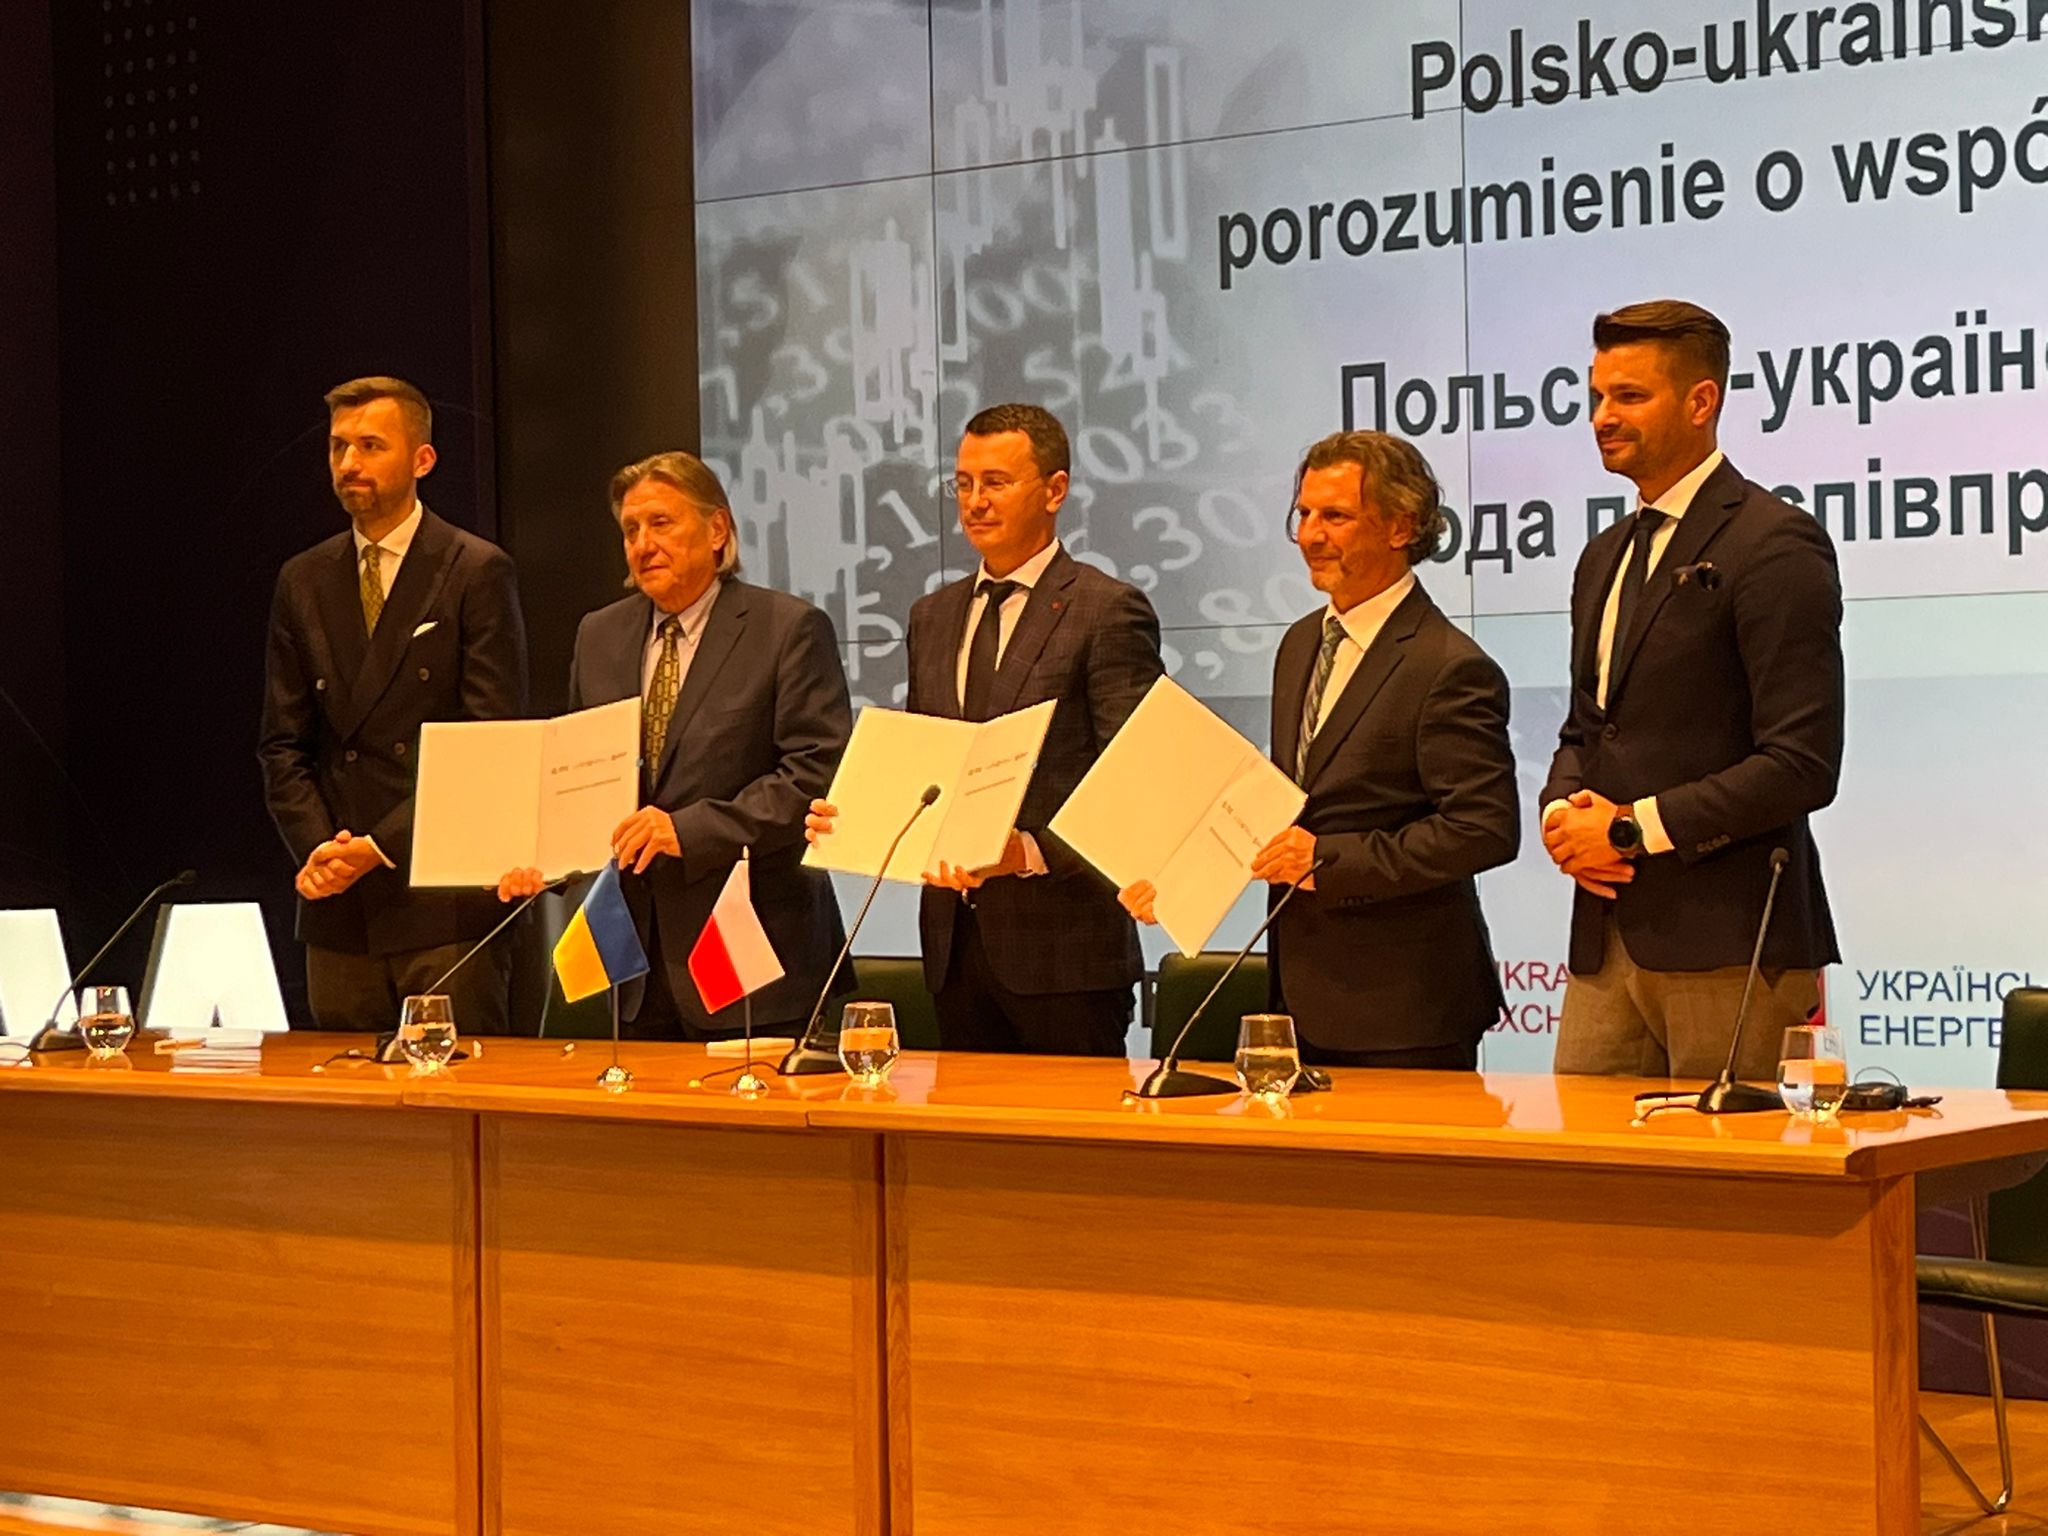 Uroczystość z okazji podpisania polsko-ukraińskiego porozumienia w siedzibie GPW. Fot. Jędrzej Stachura